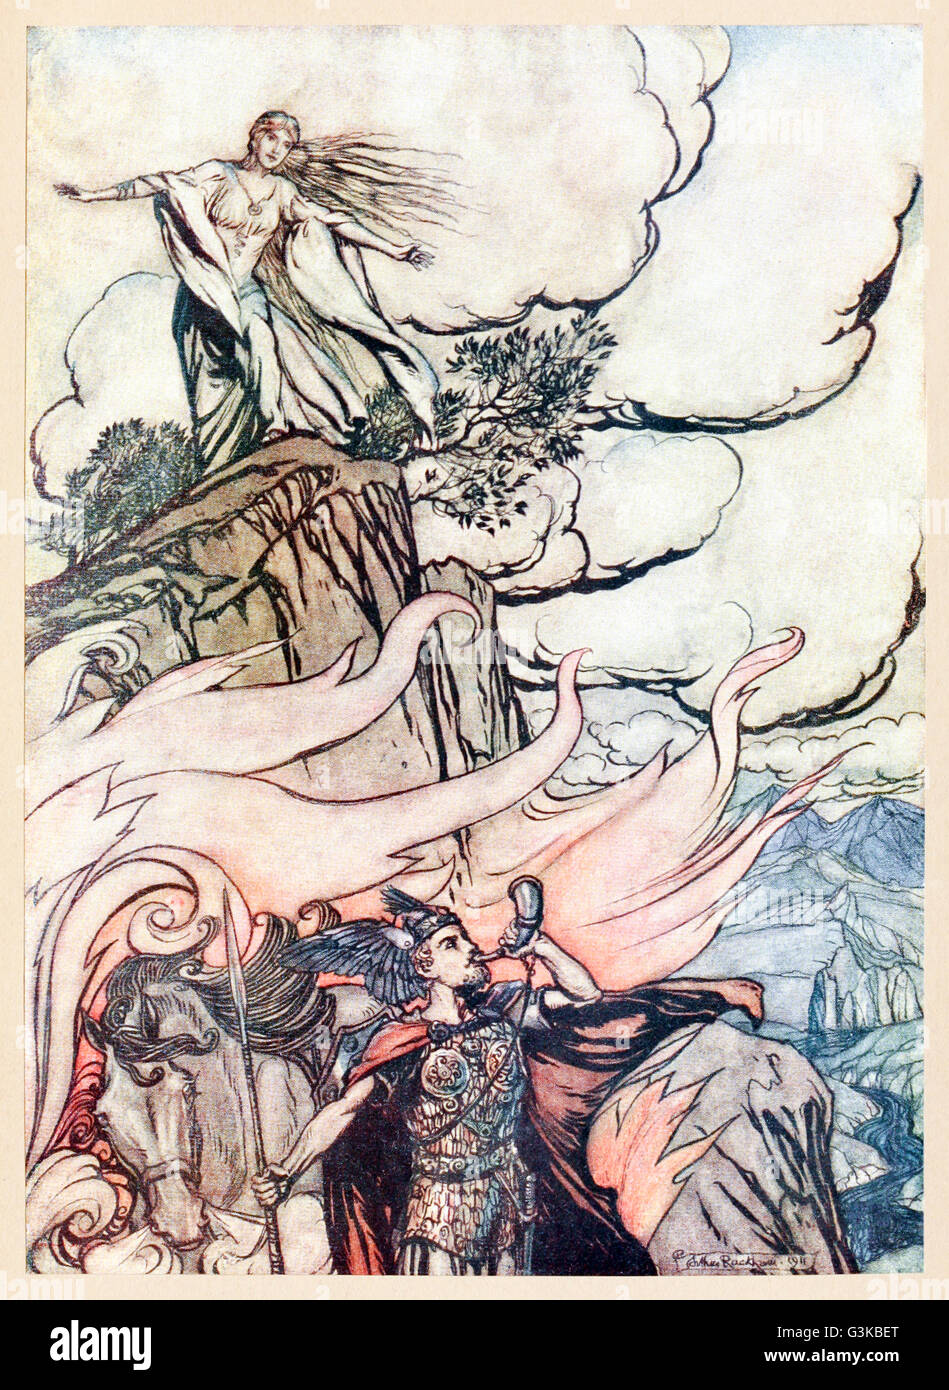 "Siegfried quitte Brunnhilde en quête d'aventure" à partir de "& Siegfried Le Crépuscule des dieux' illustré par Arthur Rackham (1867-1939). Voir la description pour plus d'informations. Banque D'Images